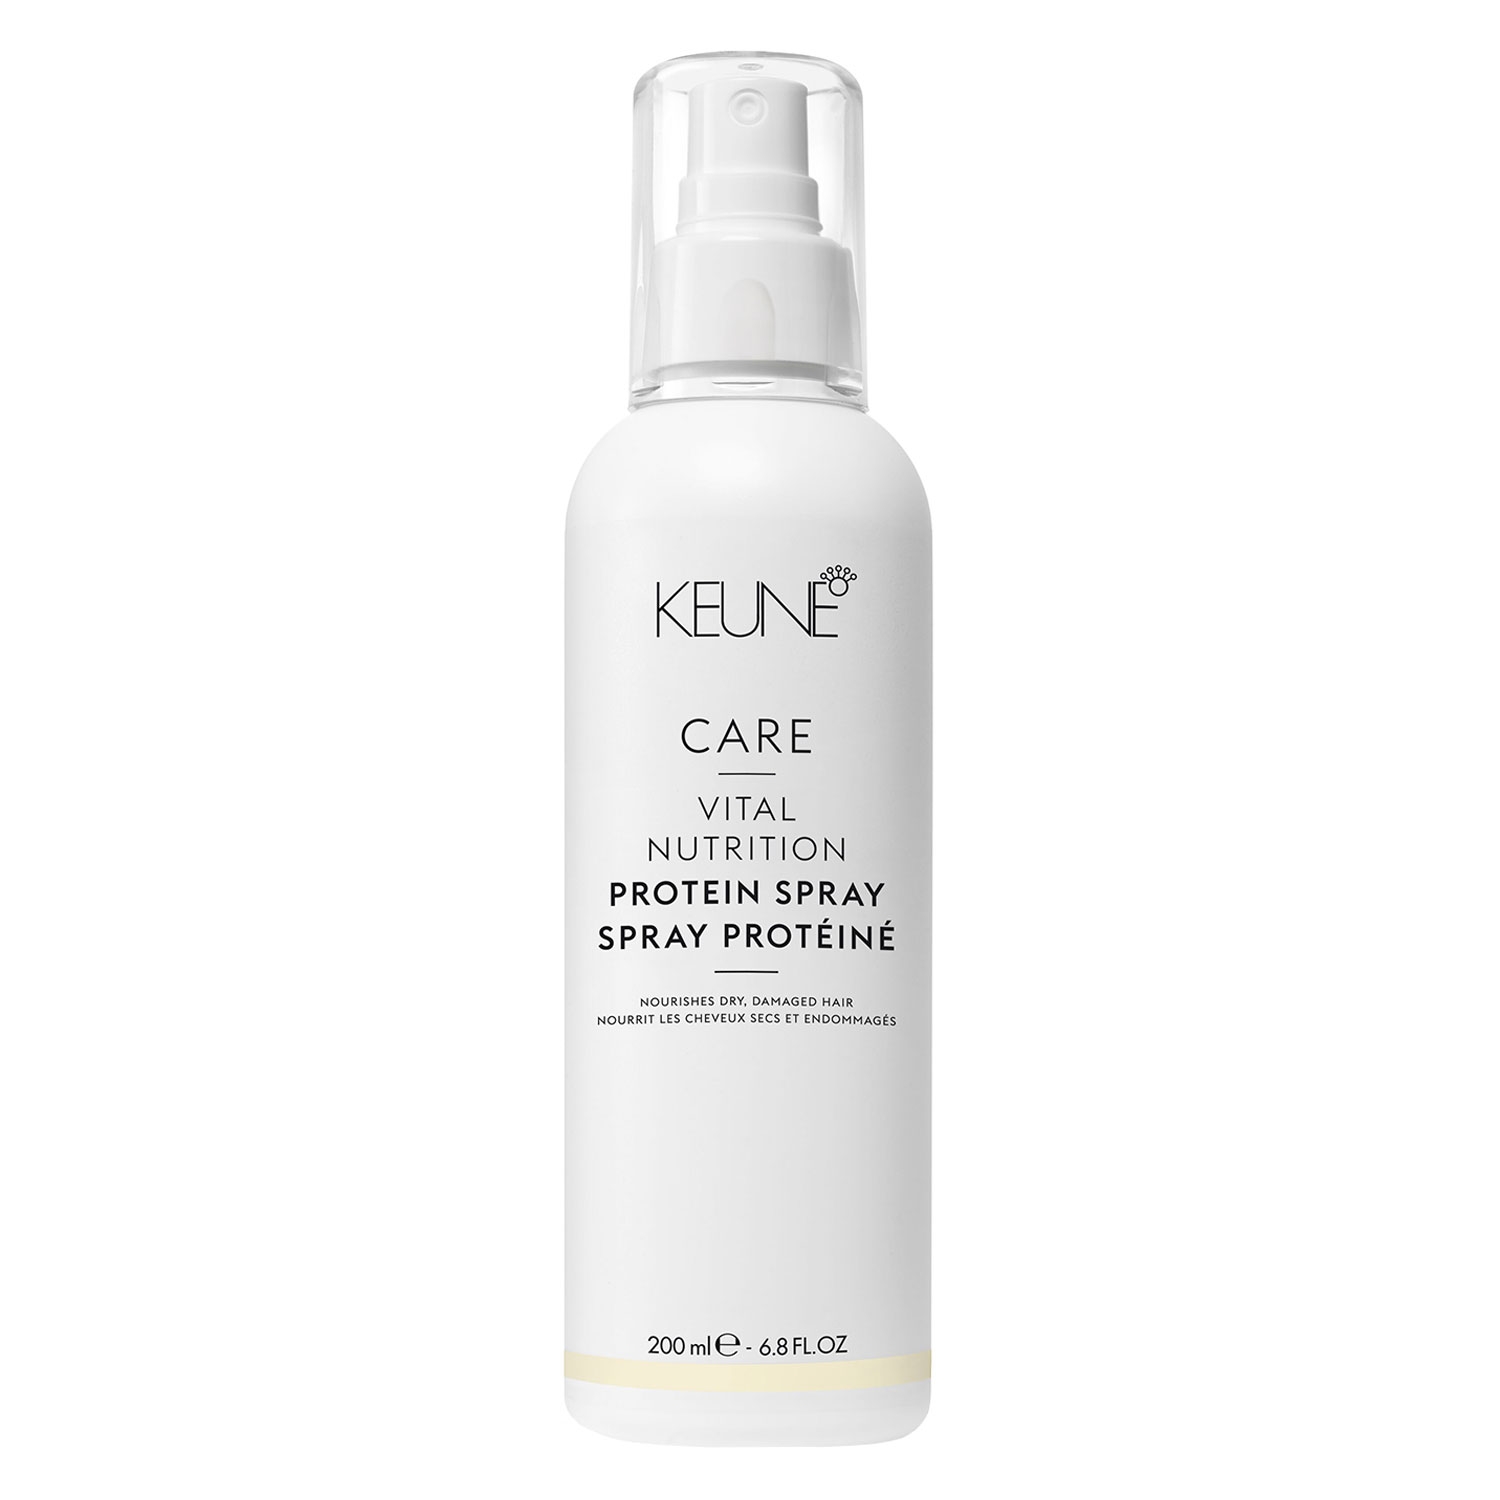 Produktbild von Keune Care - Vital Nutrition Protein Spray